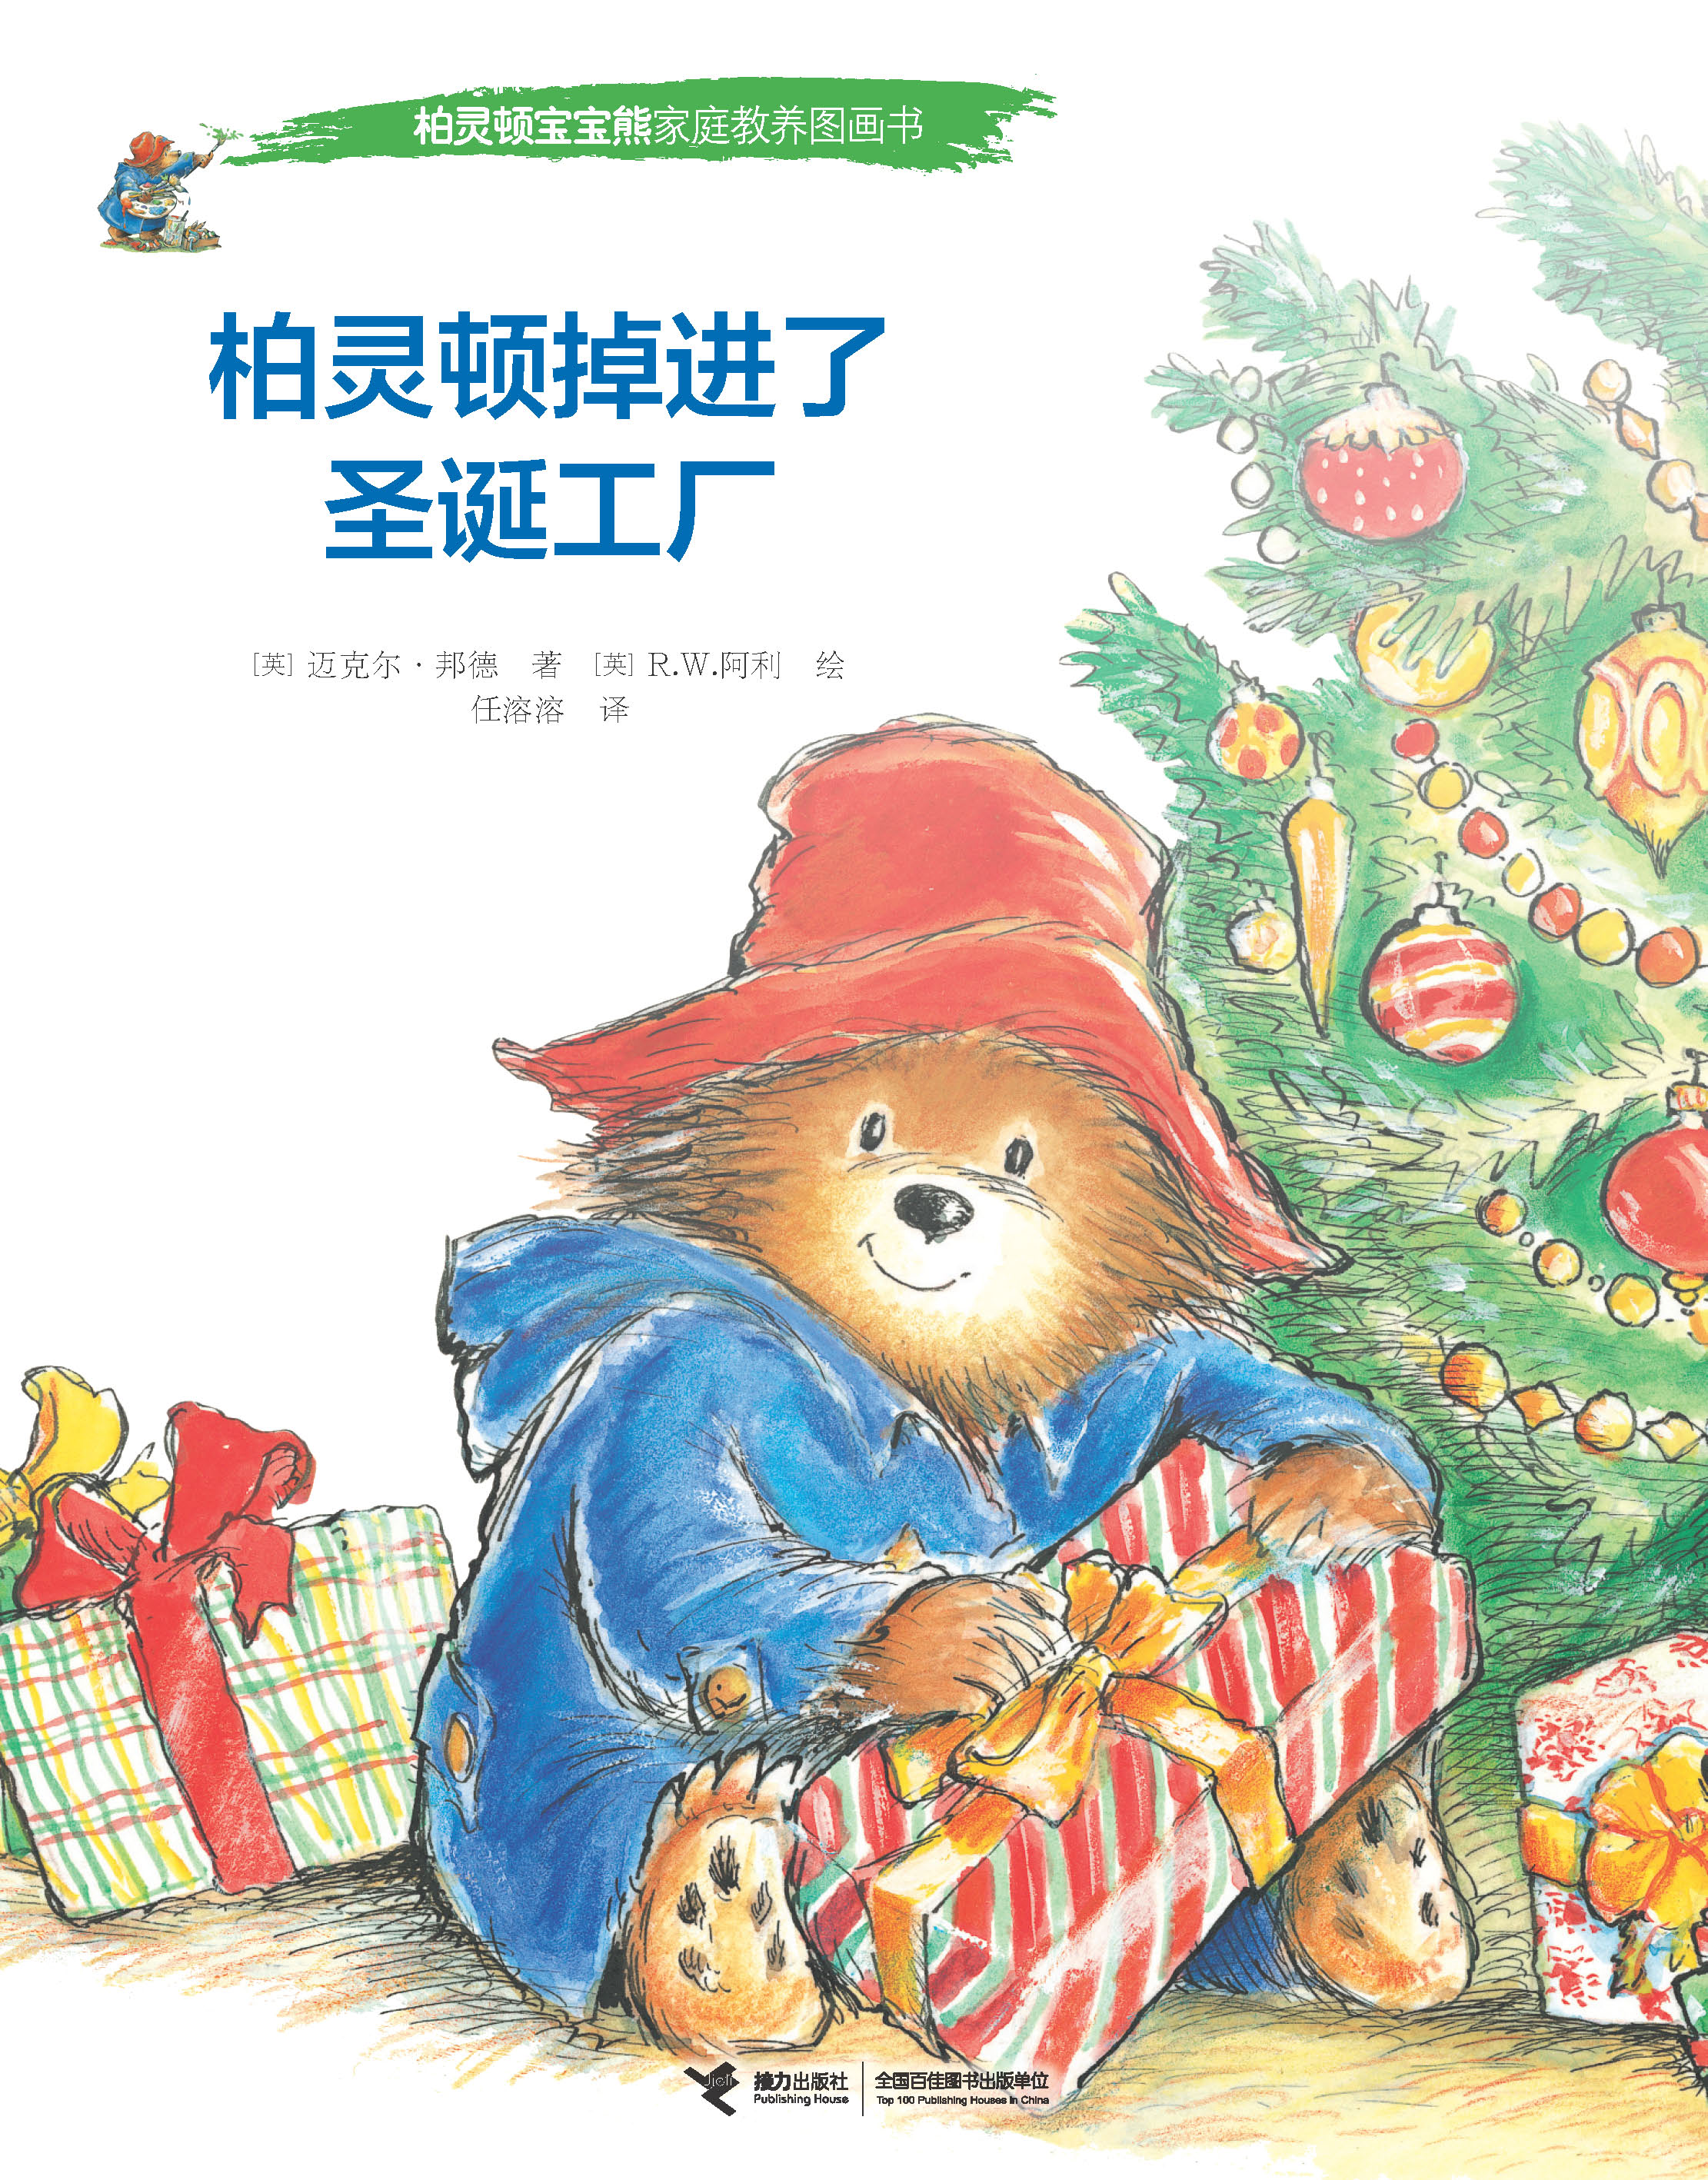 柏灵顿宝宝熊家庭教养图画书:柏灵顿掉进了圣诞工厂